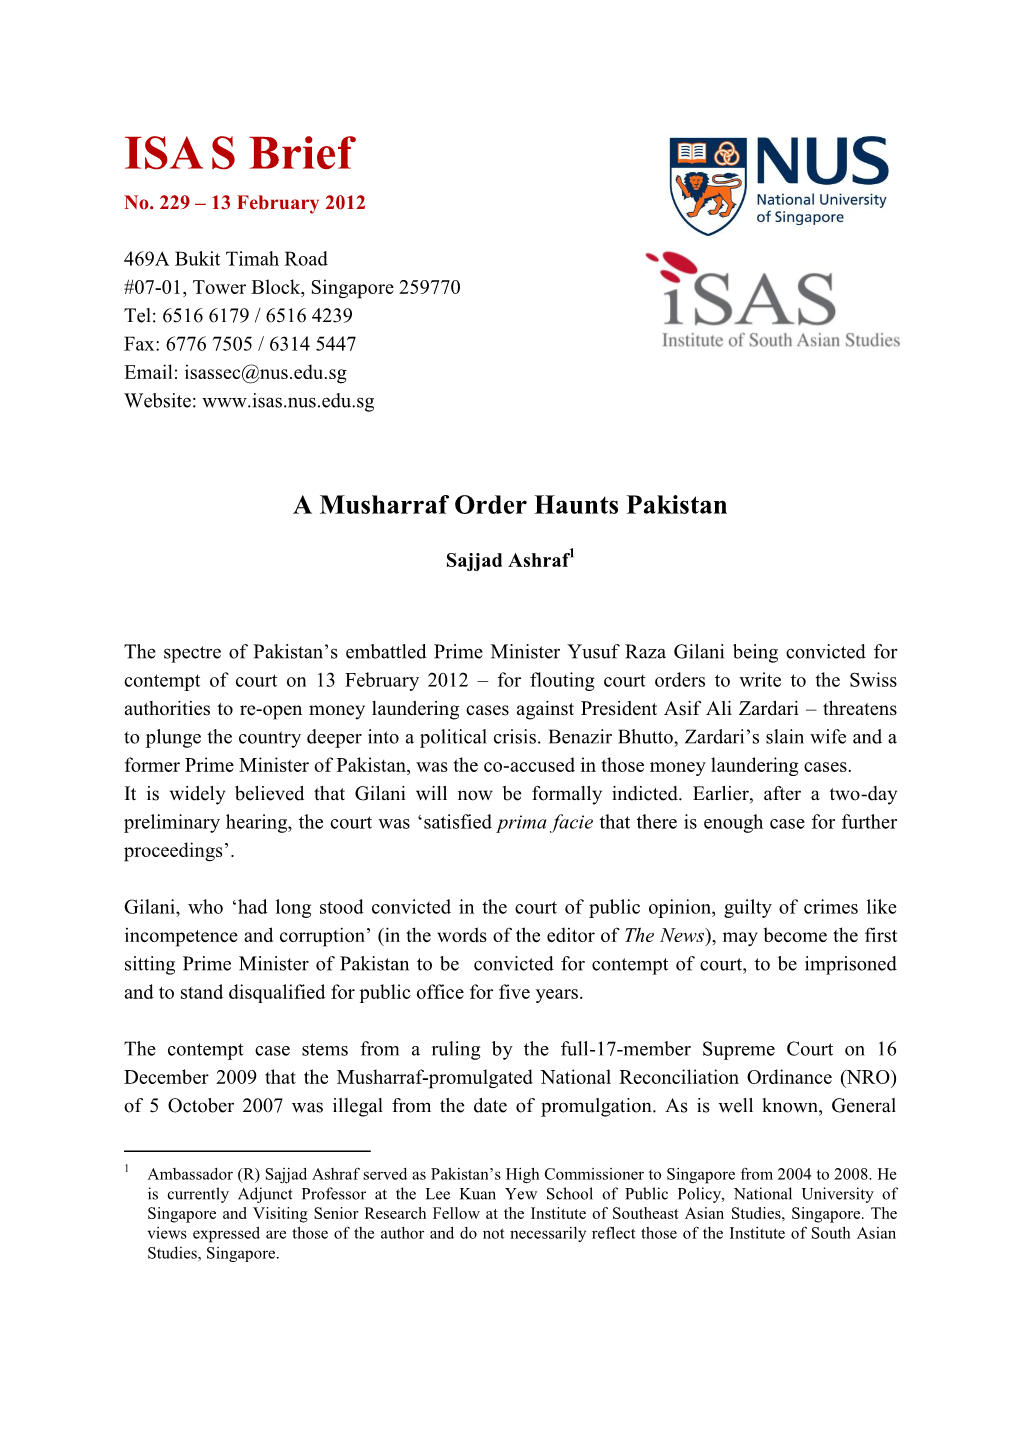 A Musharraf Order Haunts Pakistan